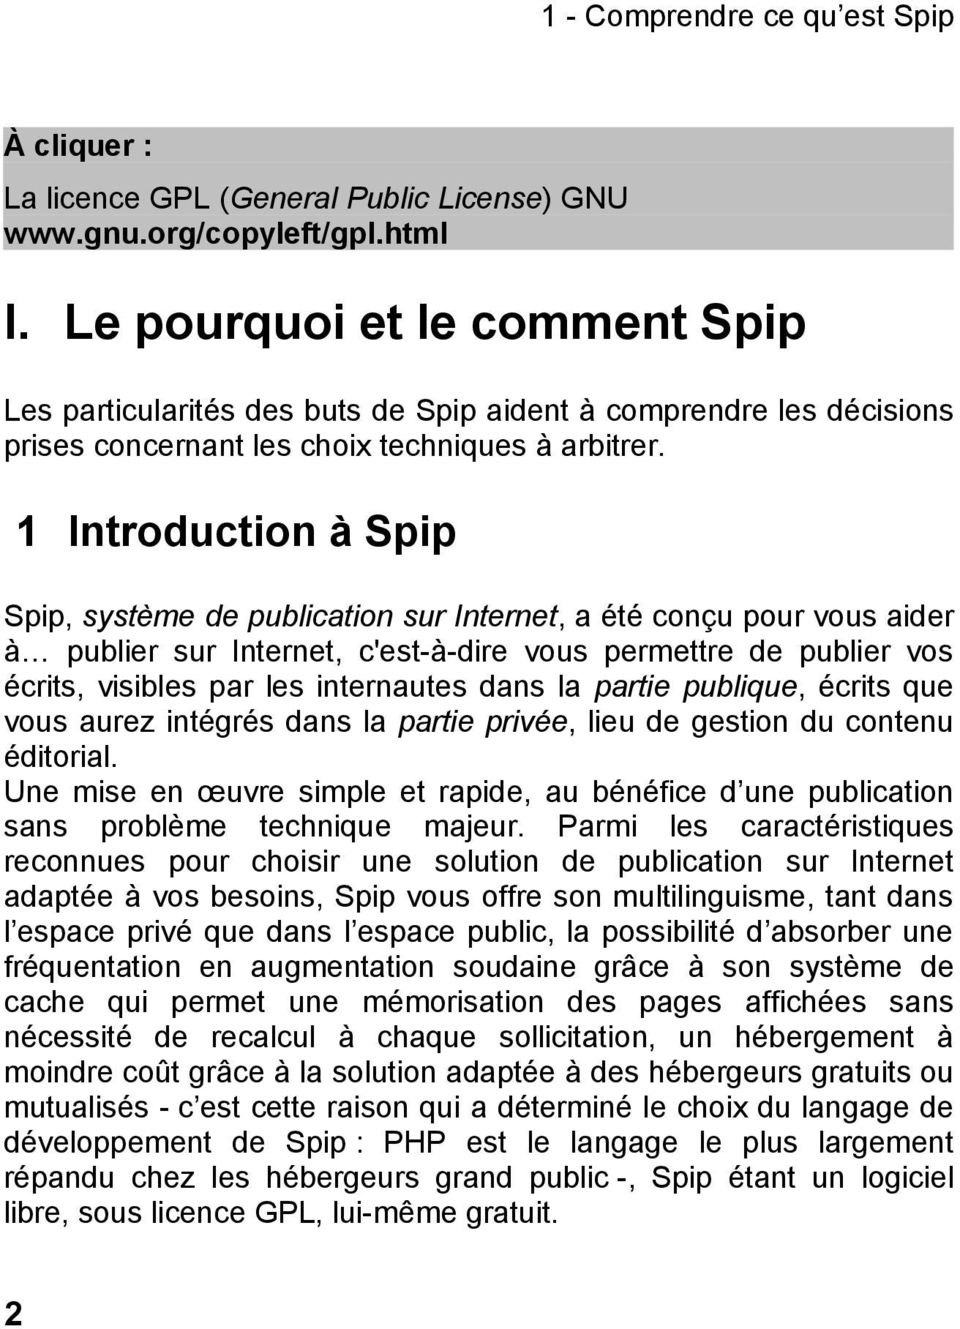 1 Introduction à Spip Spip, système de publication sur Internet, a été conçu pour vous aider à publier sur Internet, c'est-à-dire vous permettre de publier vos écrits, visibles par les internautes